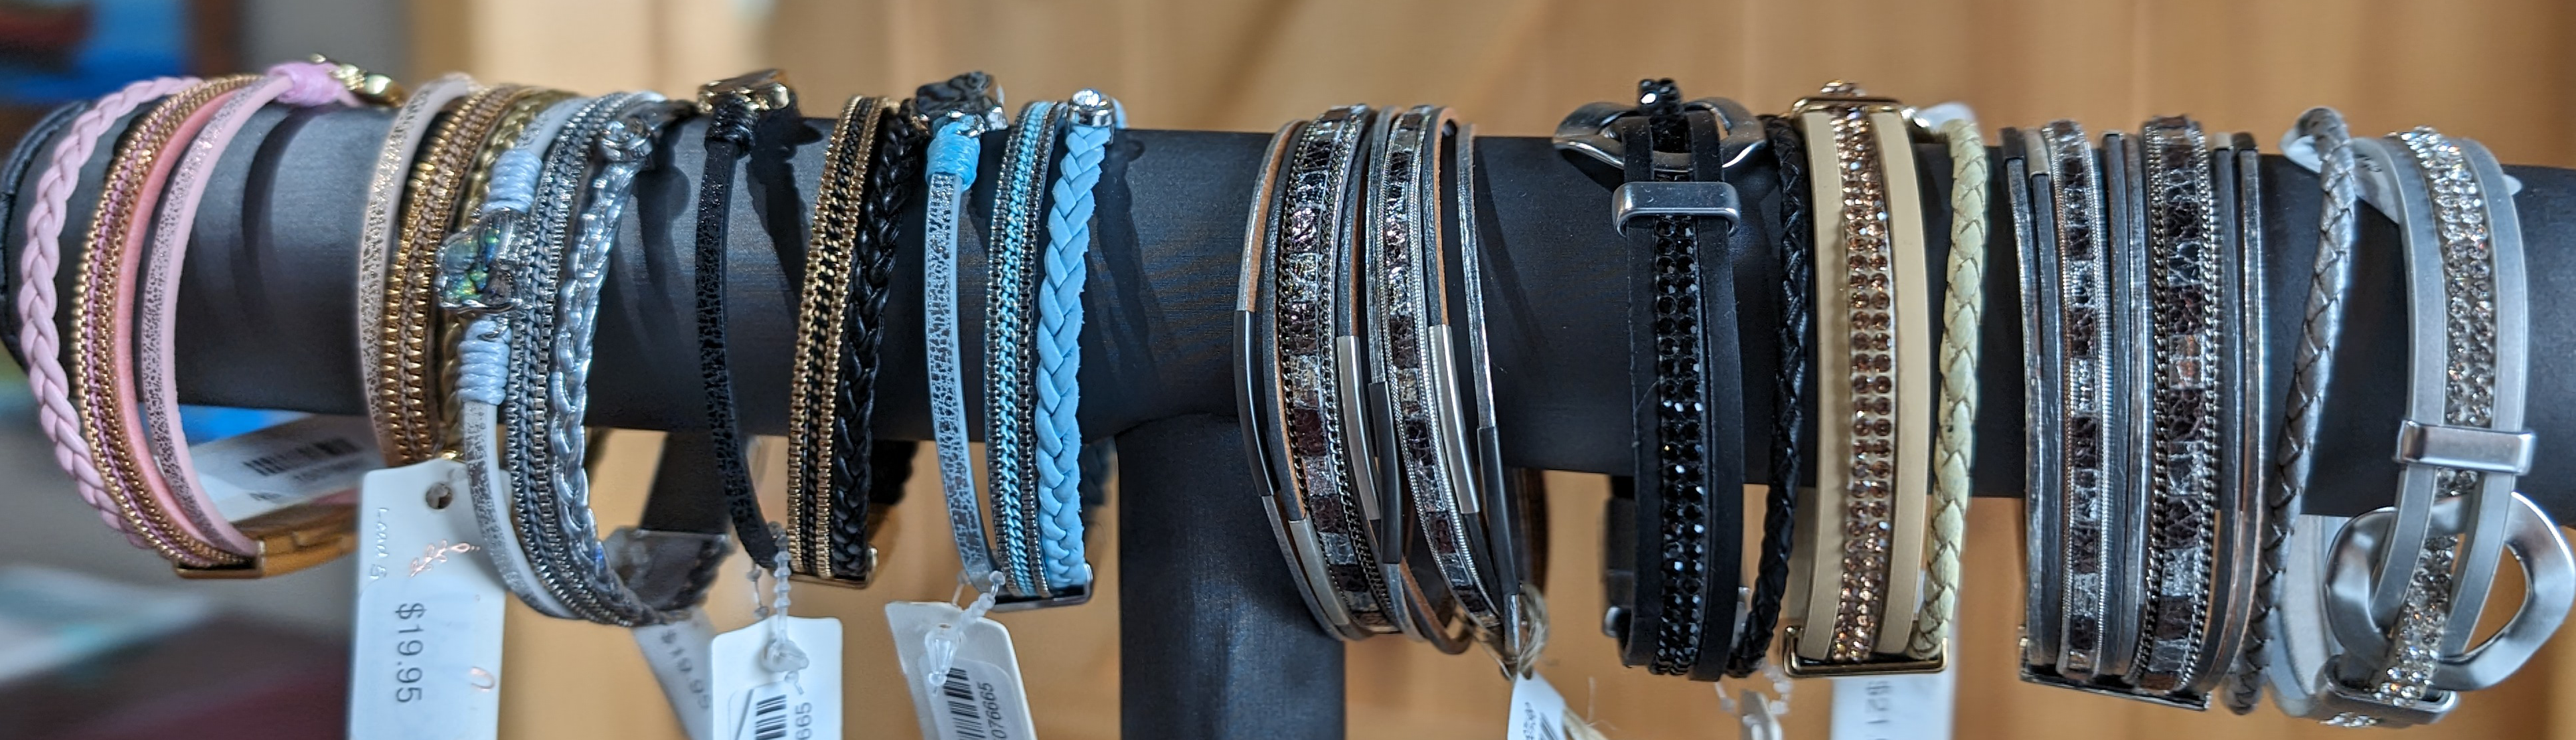 Jewelry: Bracelets